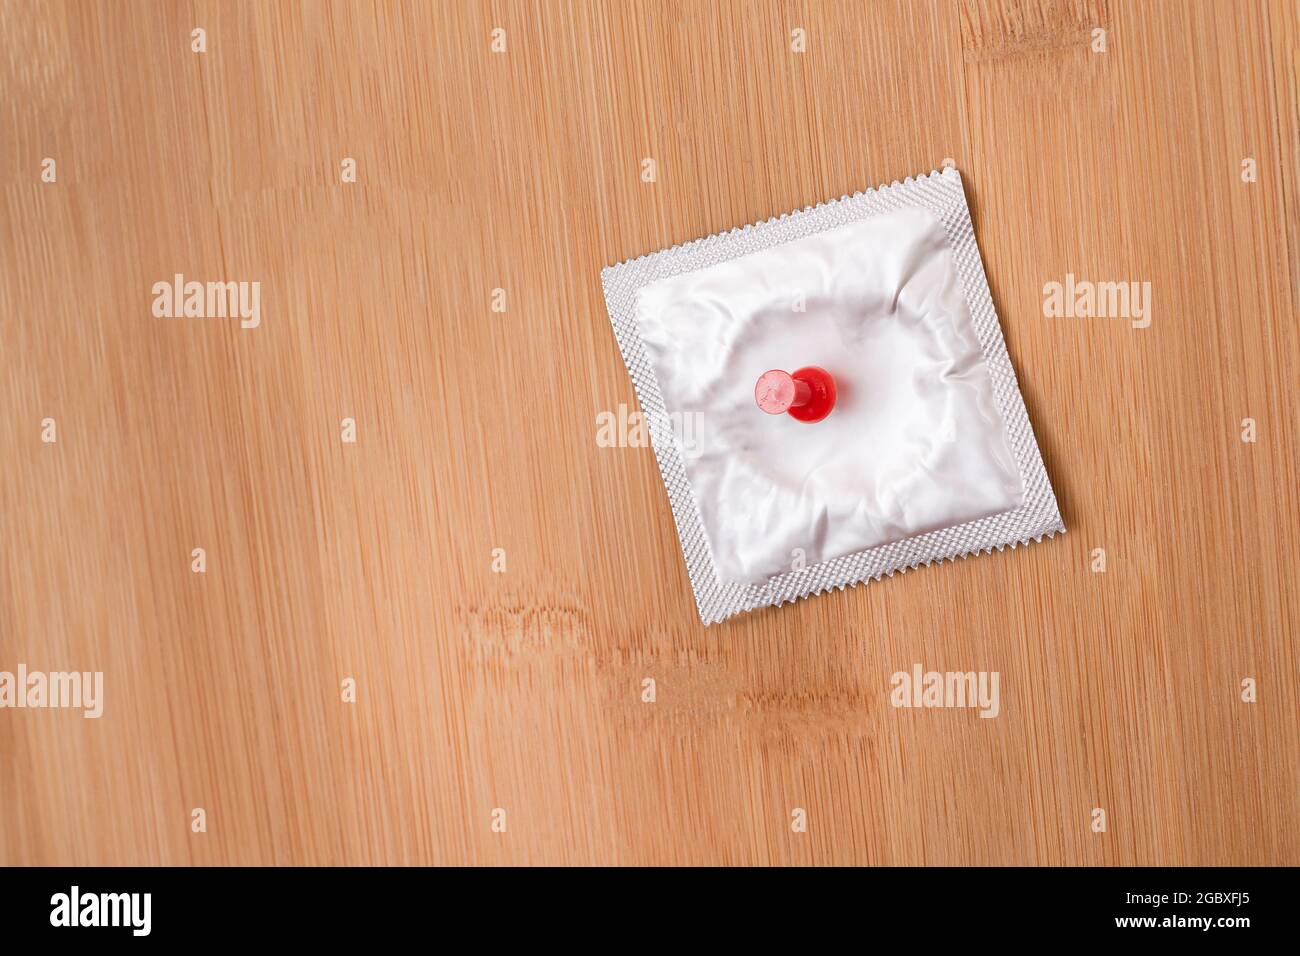 Une plaisanterie sur des collègues, Freebie ou un condom défectueux - Condom emballé de latex épinglé à un forum en bois Banque D'Images